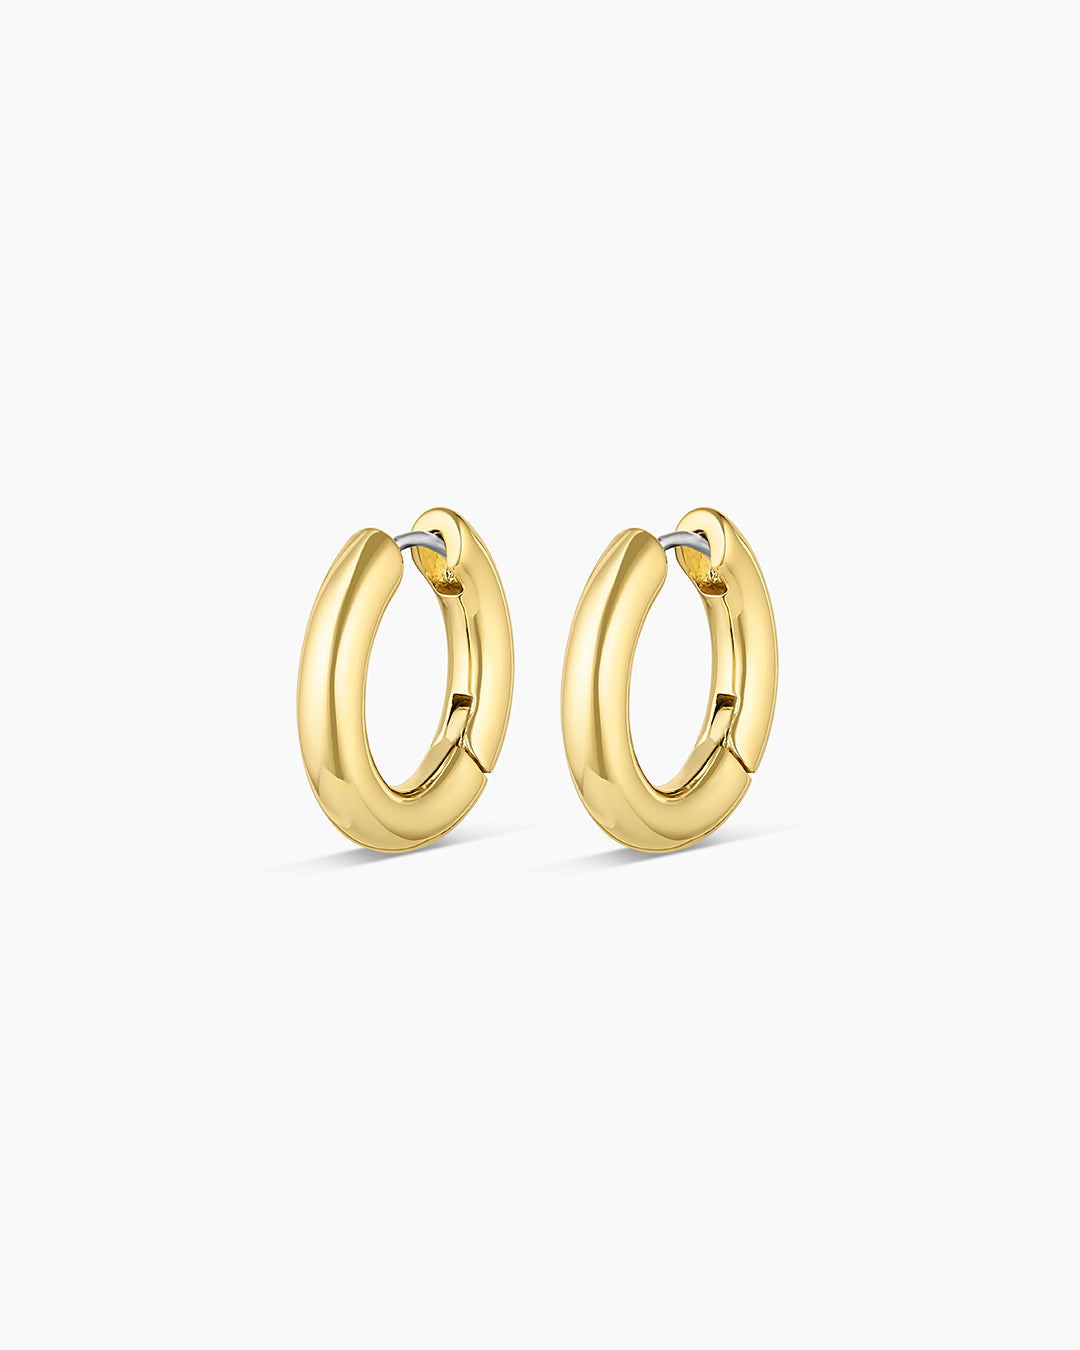 Double Ear Cuff Ring Gold, Silver, Rose Gold. - Etsy | Ear cuff, Cuff  earrings, Pretty ear piercings